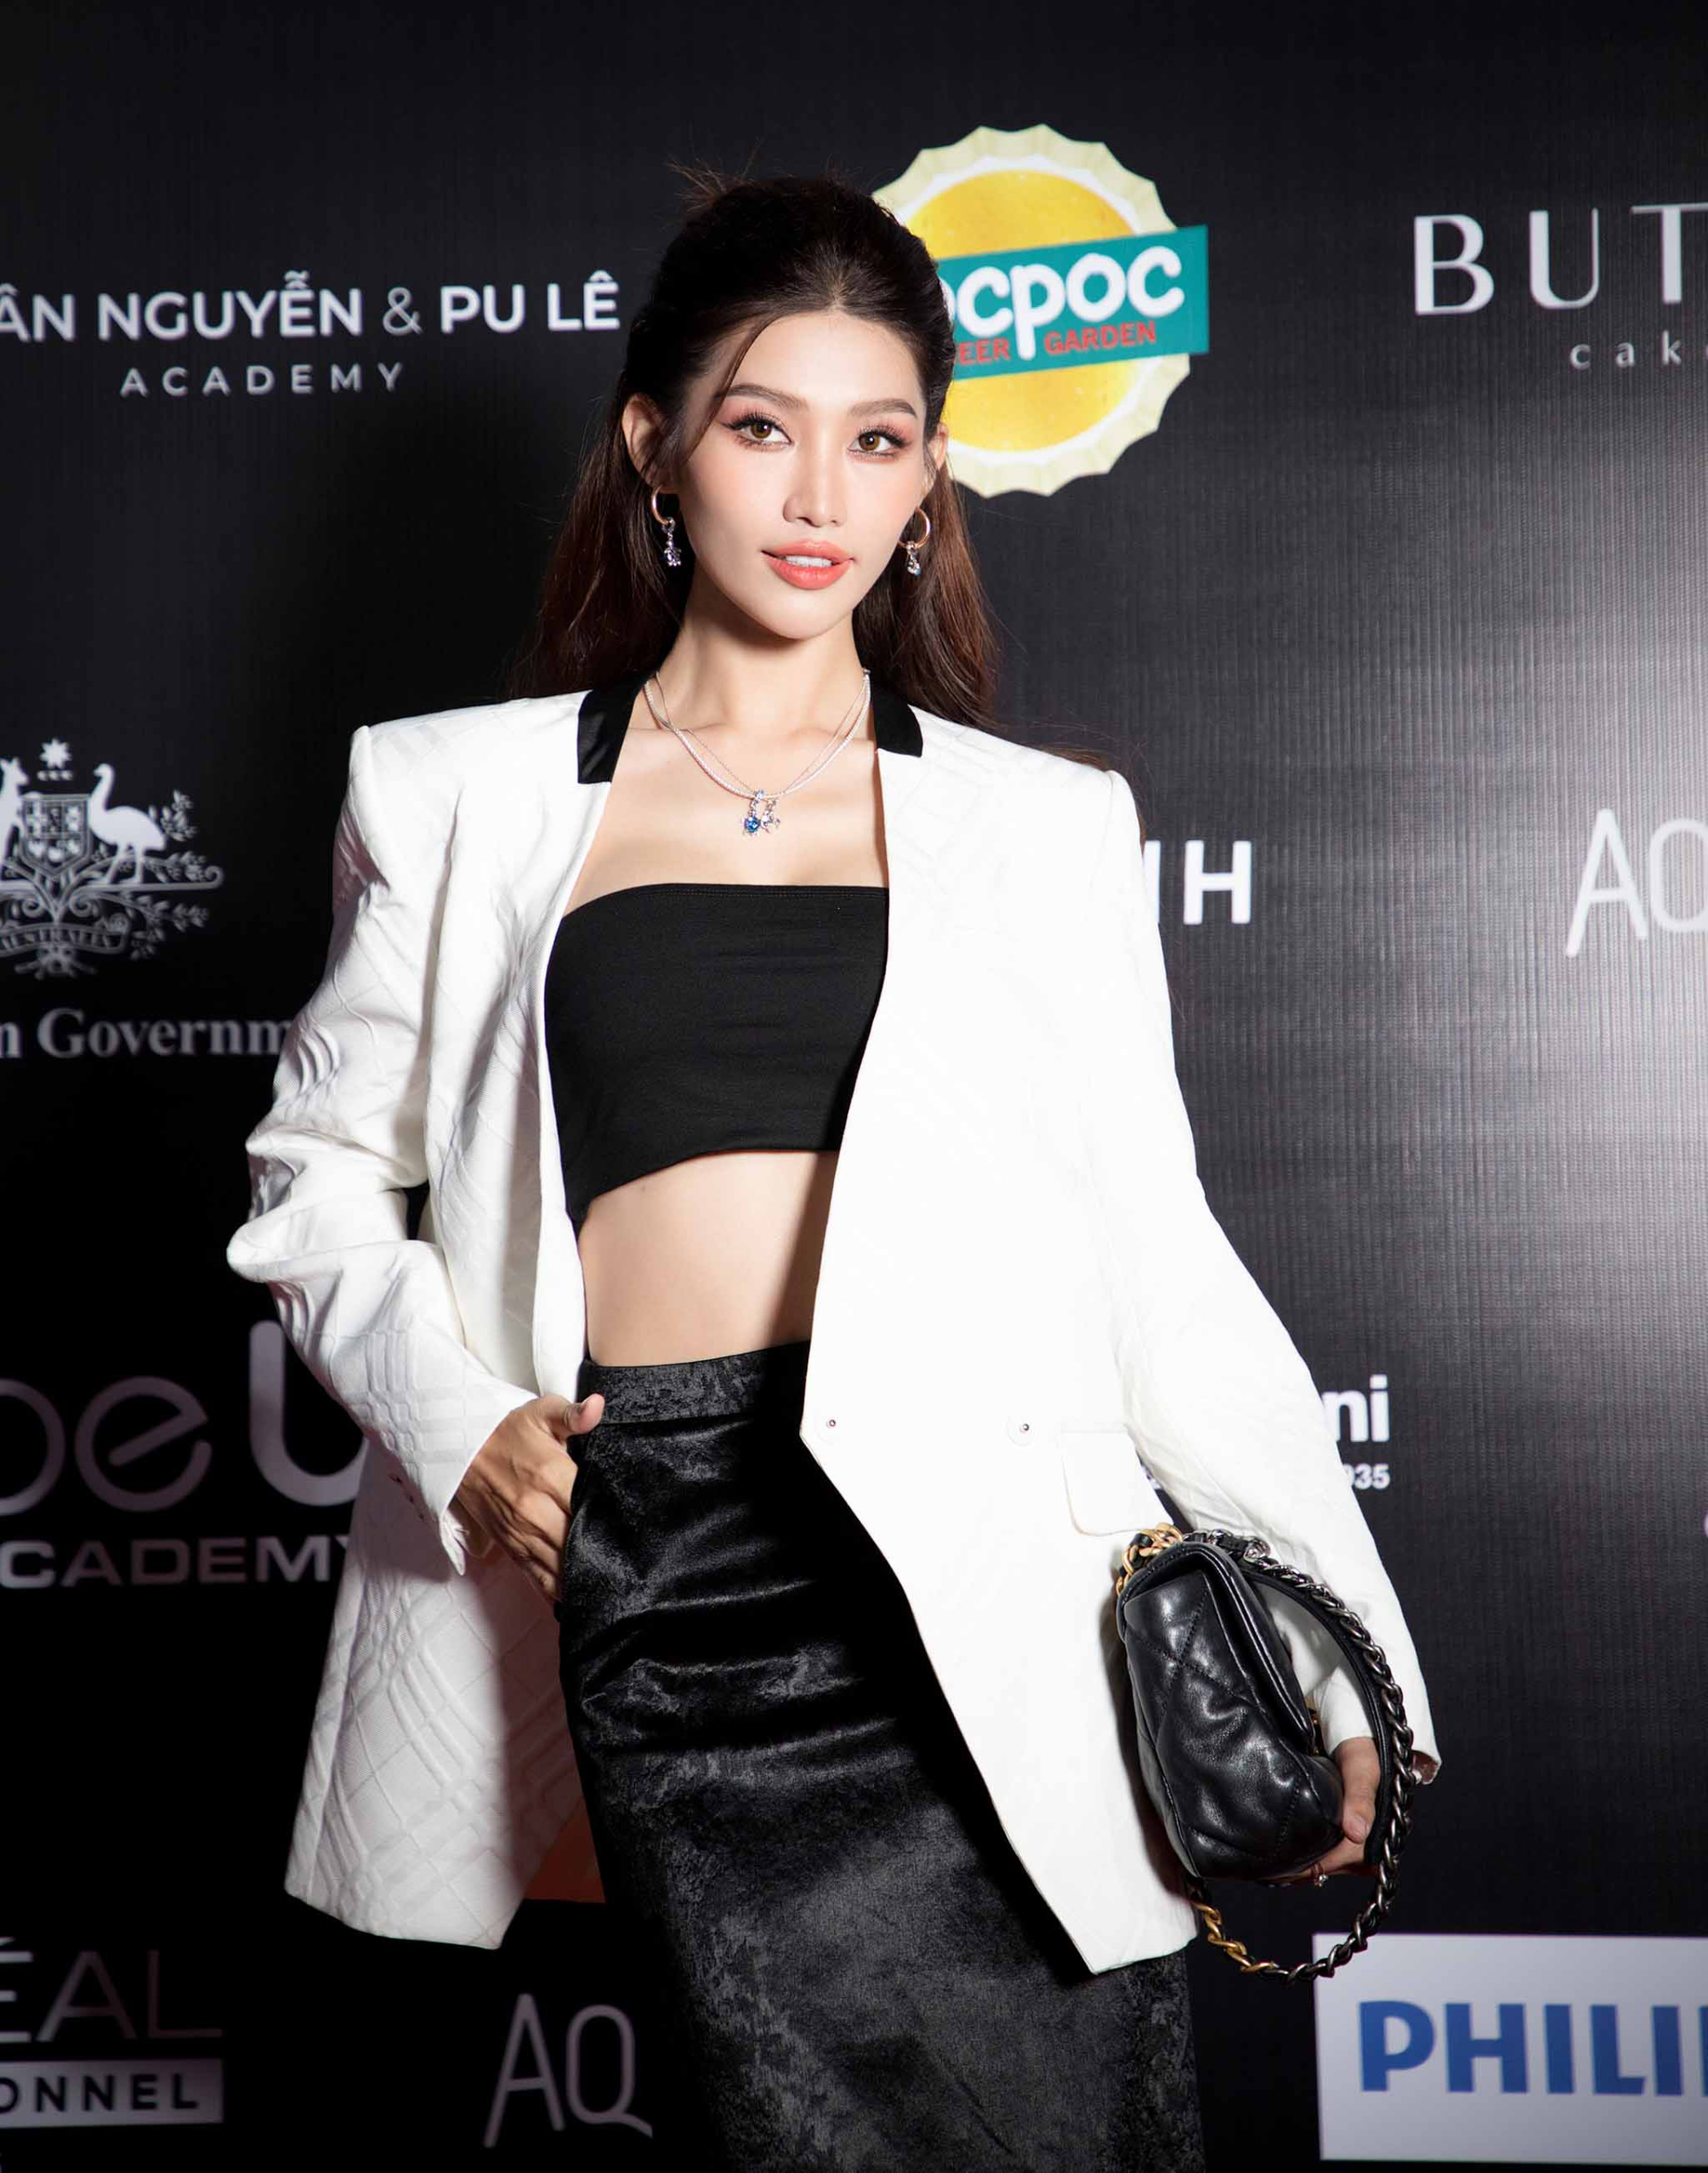 Đặc biệt, bên cạnh vai trò khách mời, nàng Á hậu còn nhận lời “tái xuất” sàn runway và đảm nhận vị trí vedette ở màn 1 cho BST mới của NTK/ stylist Lê Minh Ngọc.